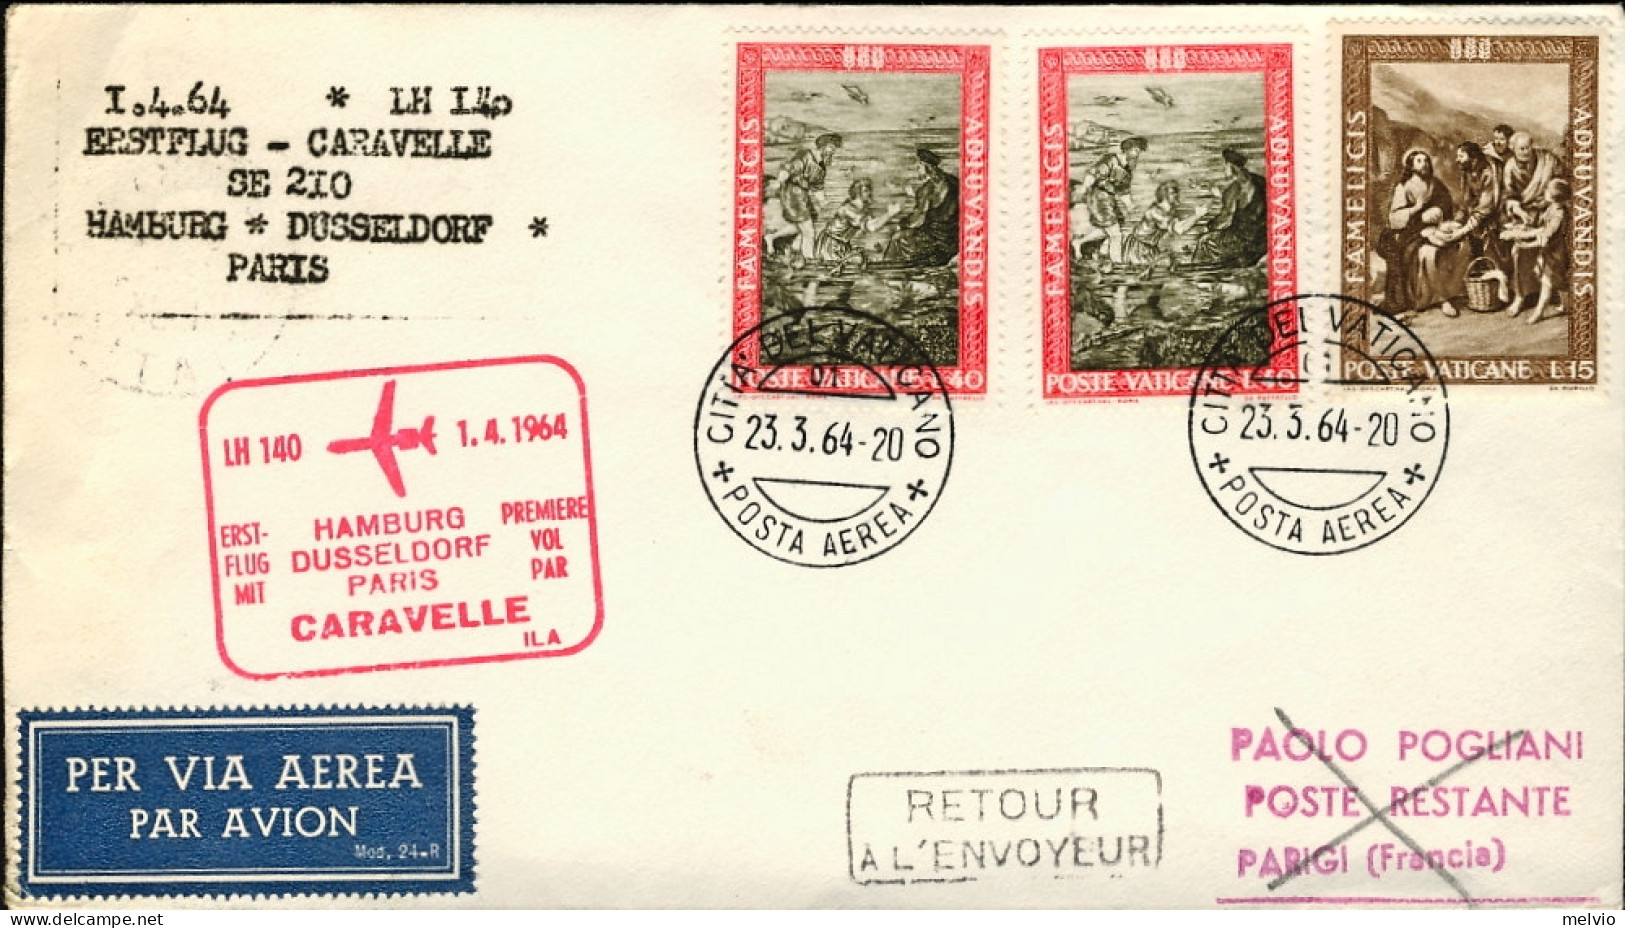 Vaticano-1964 I^volo Caravelle LH 140 Amburgo Dusseldorf Parigi Del 1 Aprile - Posta Aerea